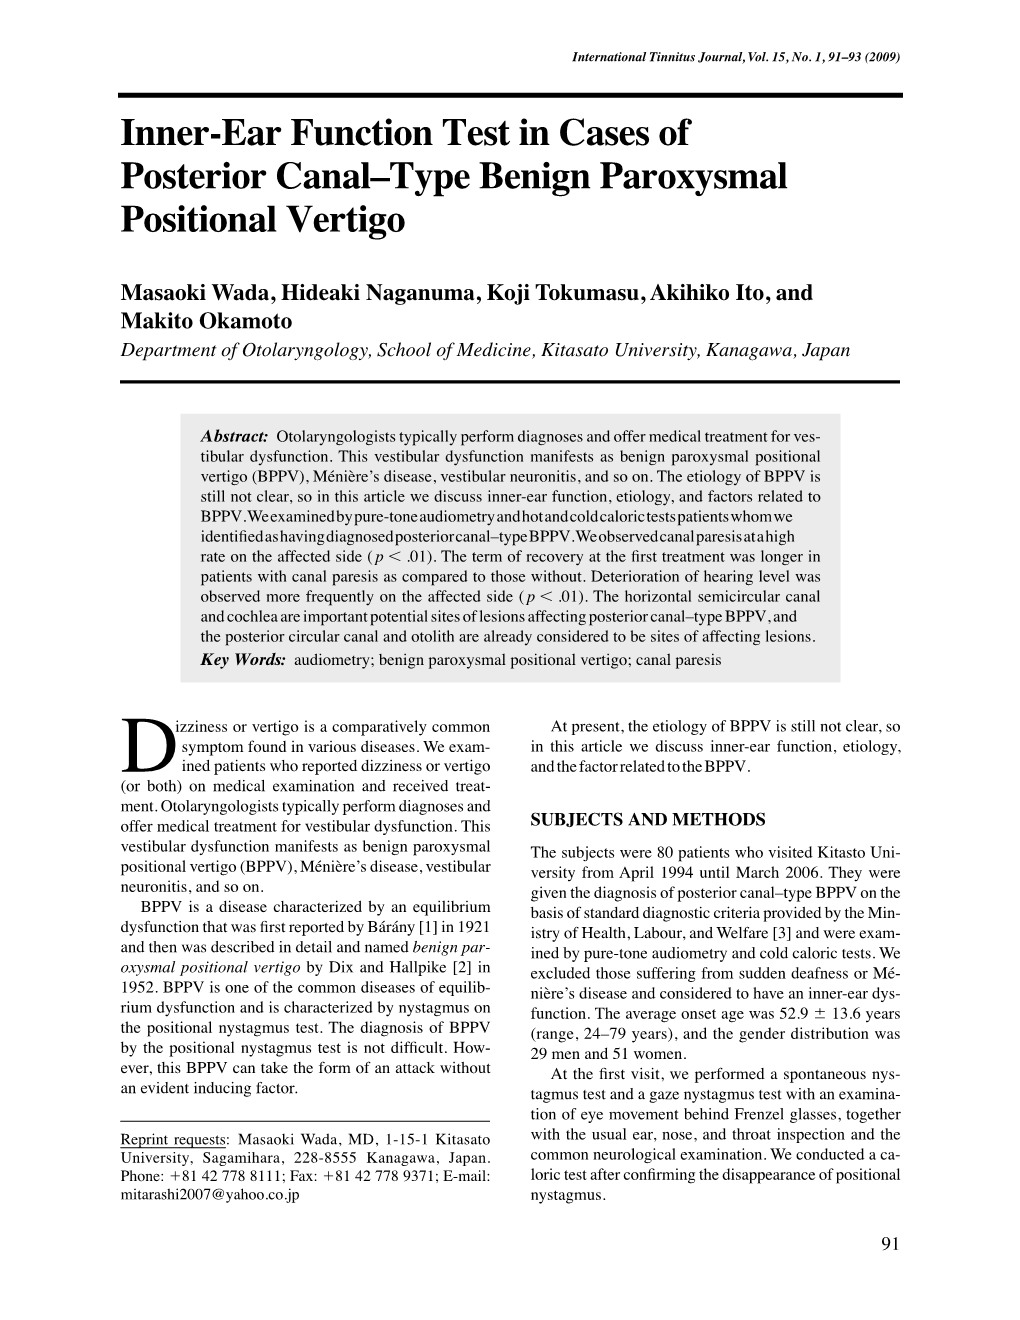 Inner-Ear Function Test in Cases of Posterior Canal–Type Benign Paroxysmal Positional Vertigo